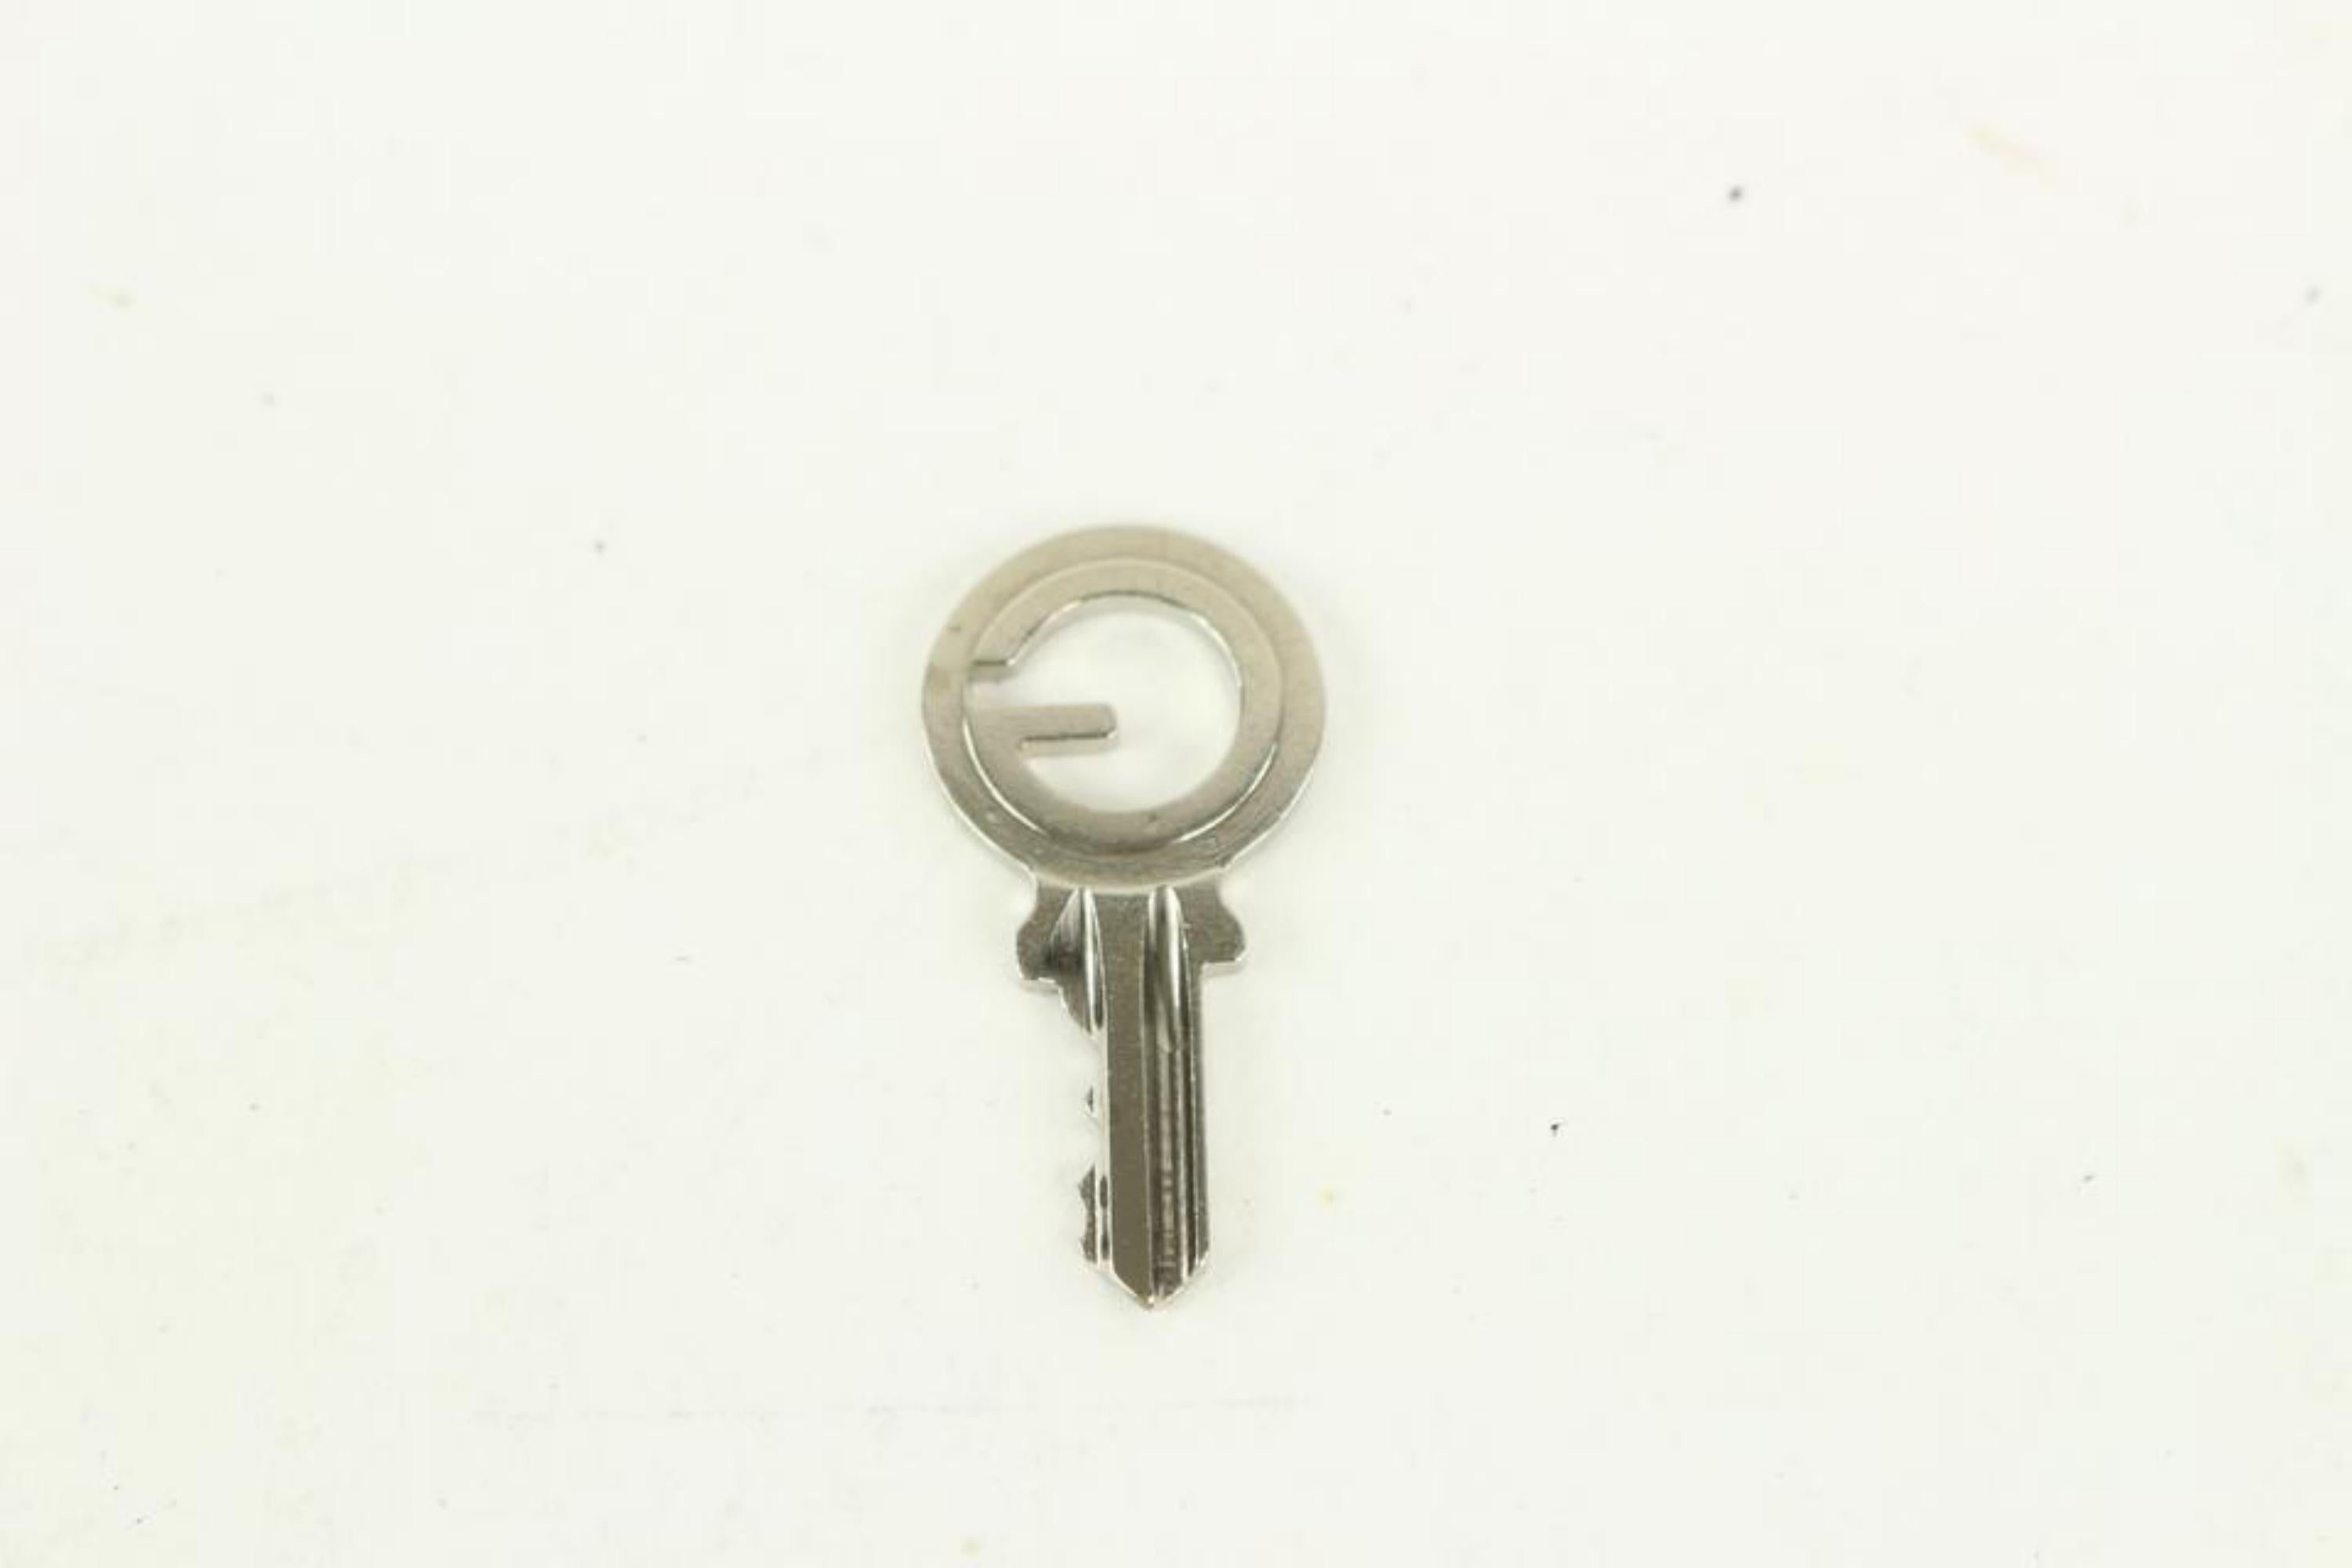 Goyard Silver Lock and Key Set Cadena Bag Charm 1012gy30 4